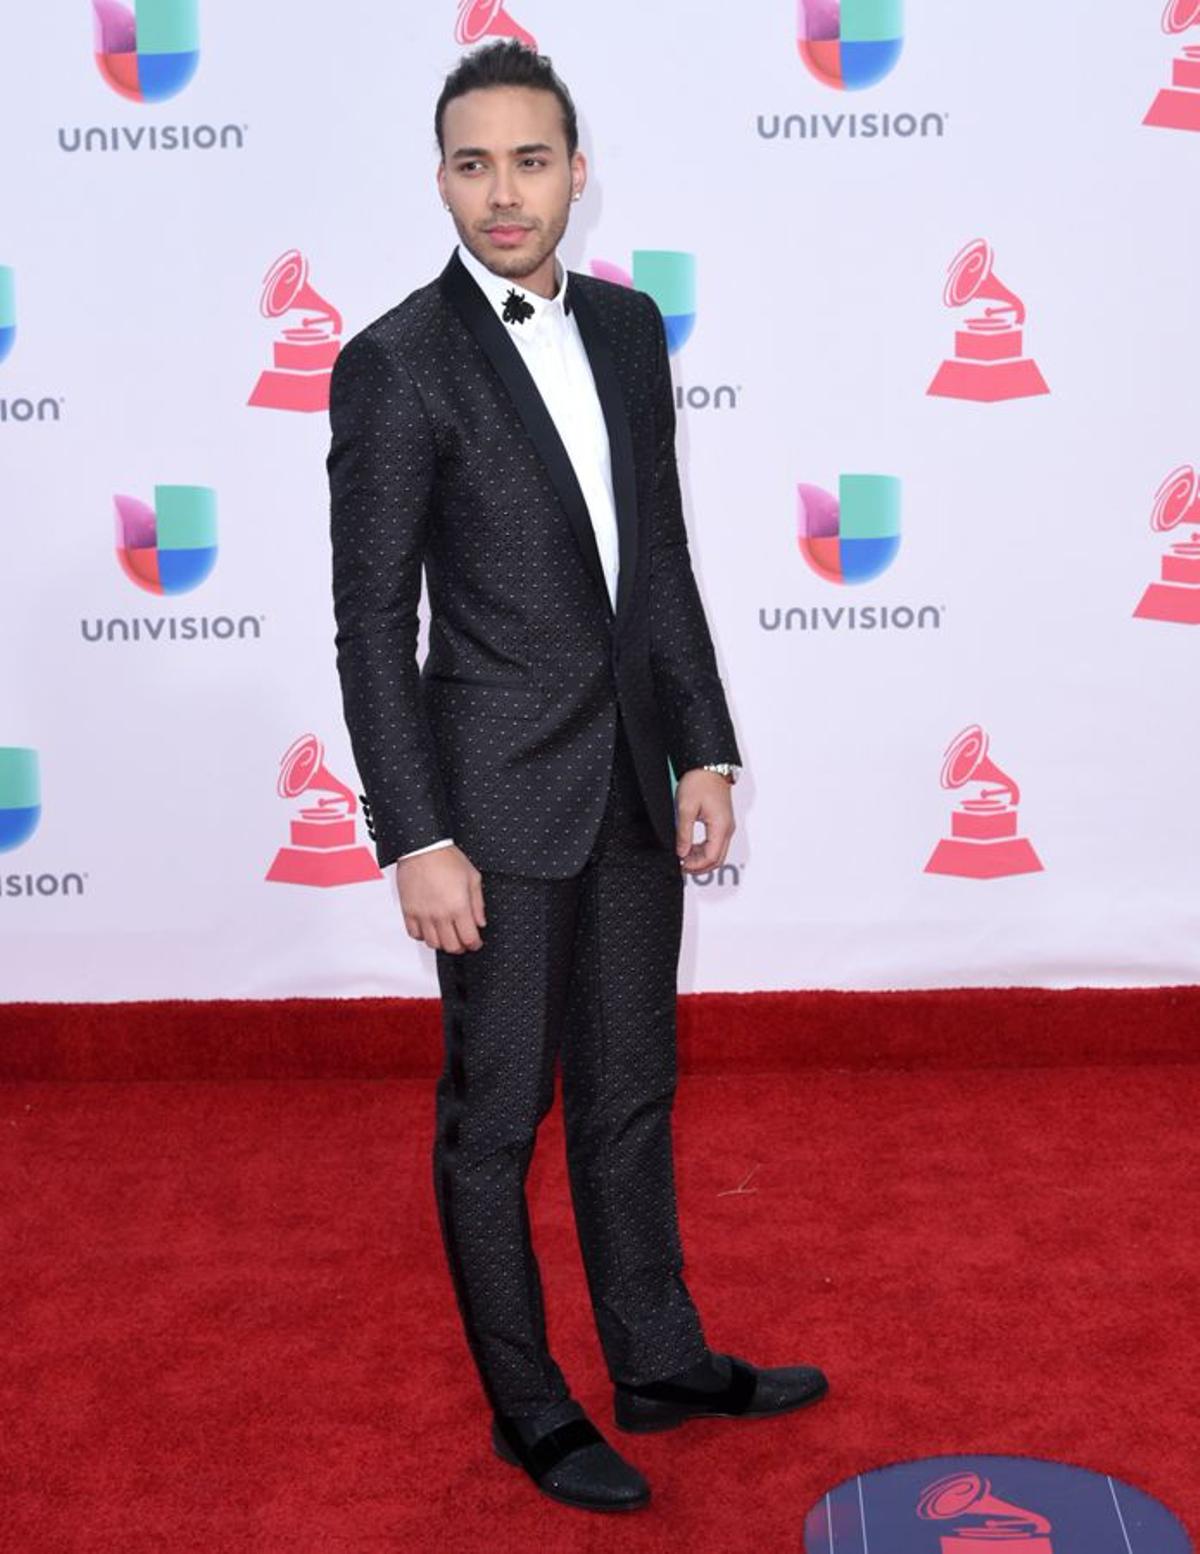 Premios Grammy Latinos 2016: Prince Royce